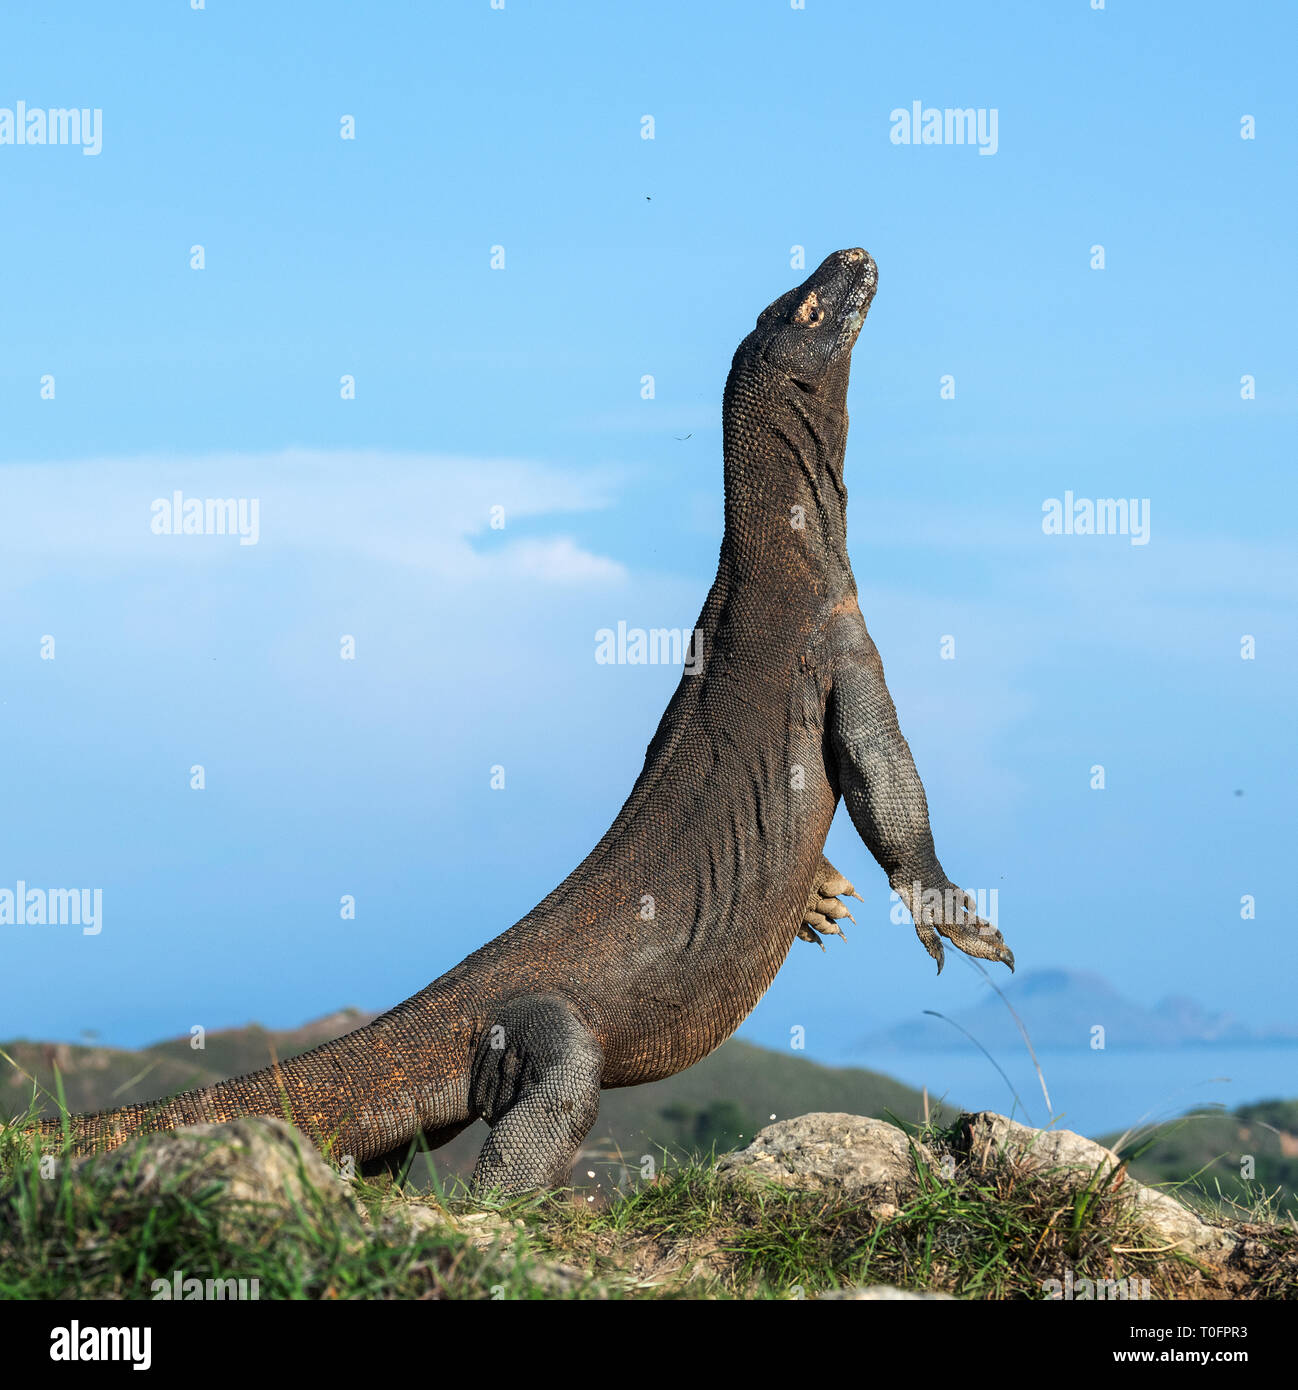 Il drago di Komodo si erge sulle zampe posteriori. Nome scientifico: Varanus komodoensis. Più grande lucertola vivente nel mondo. Isola di Rinca. Indonesia. Foto Stock